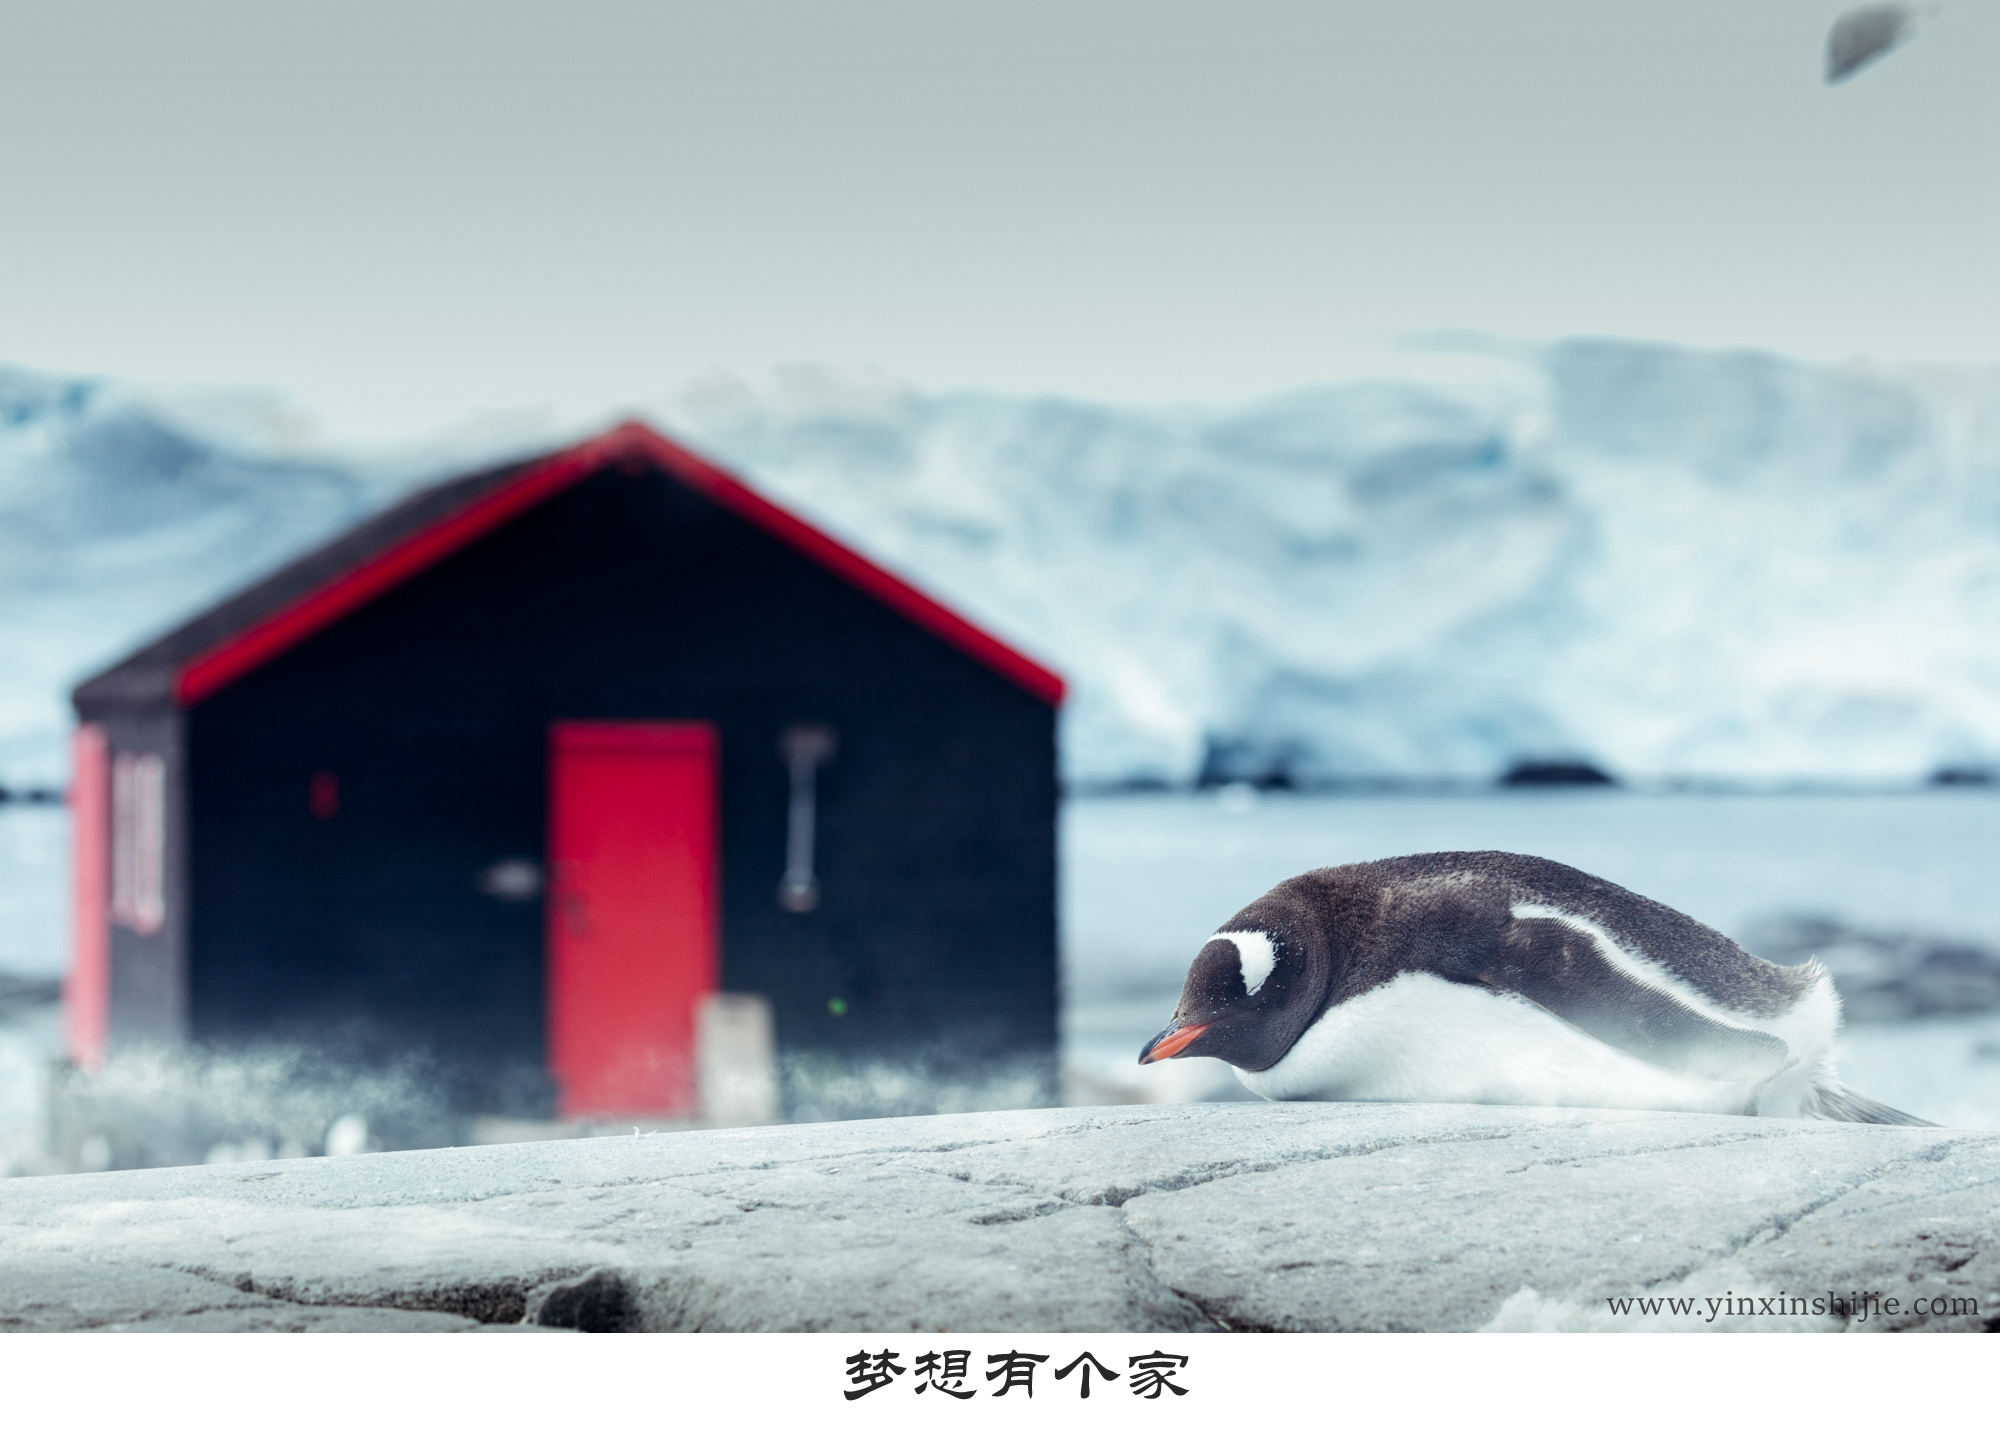 梦想有个家-2017南极企鹅